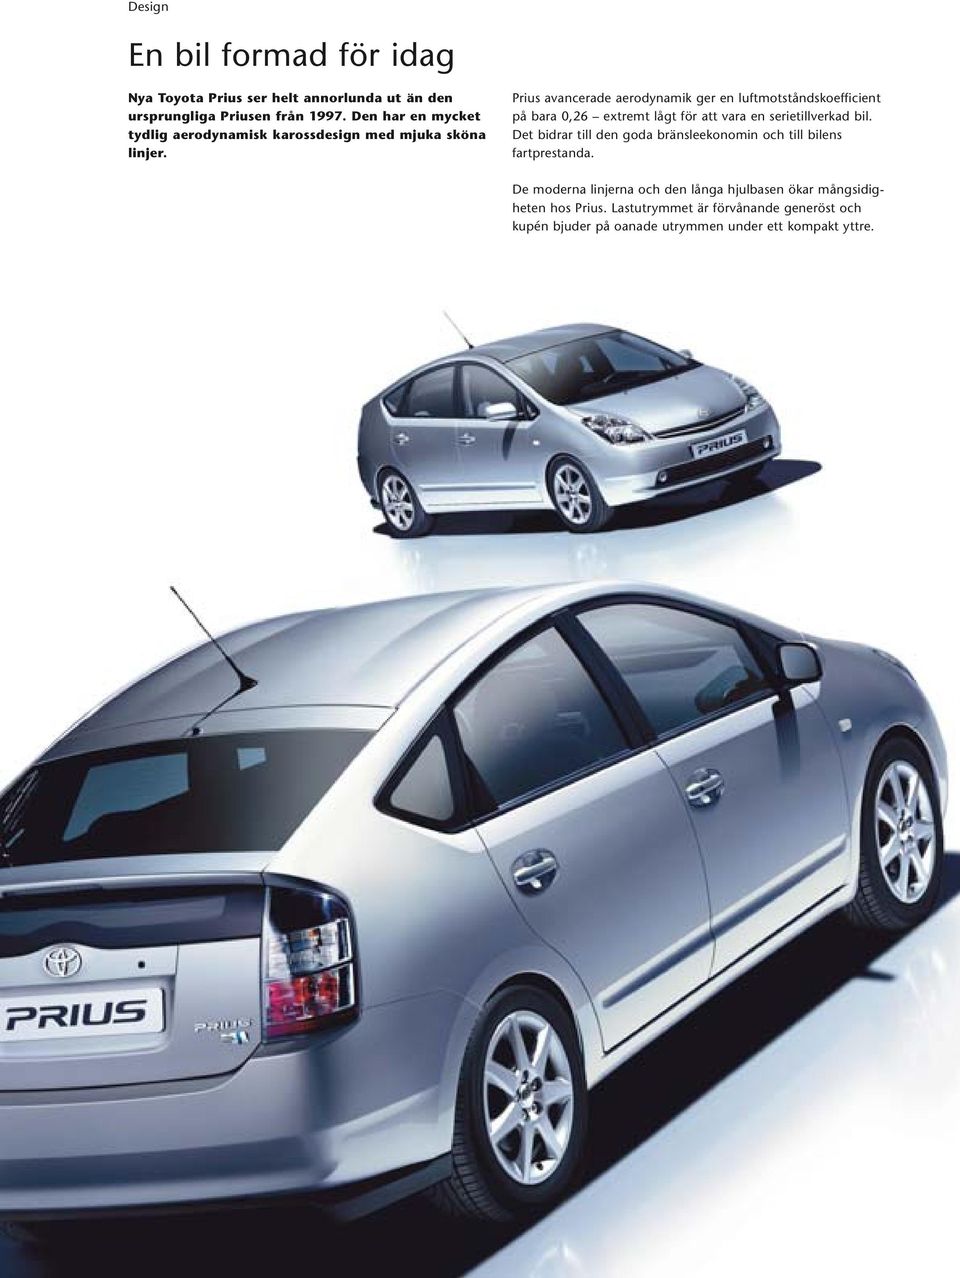 Prius avancerade aerodynamik ger en luftmotståndskoefficient på bara 0,26 extremt lågt för att vara en serietillverkad bil.